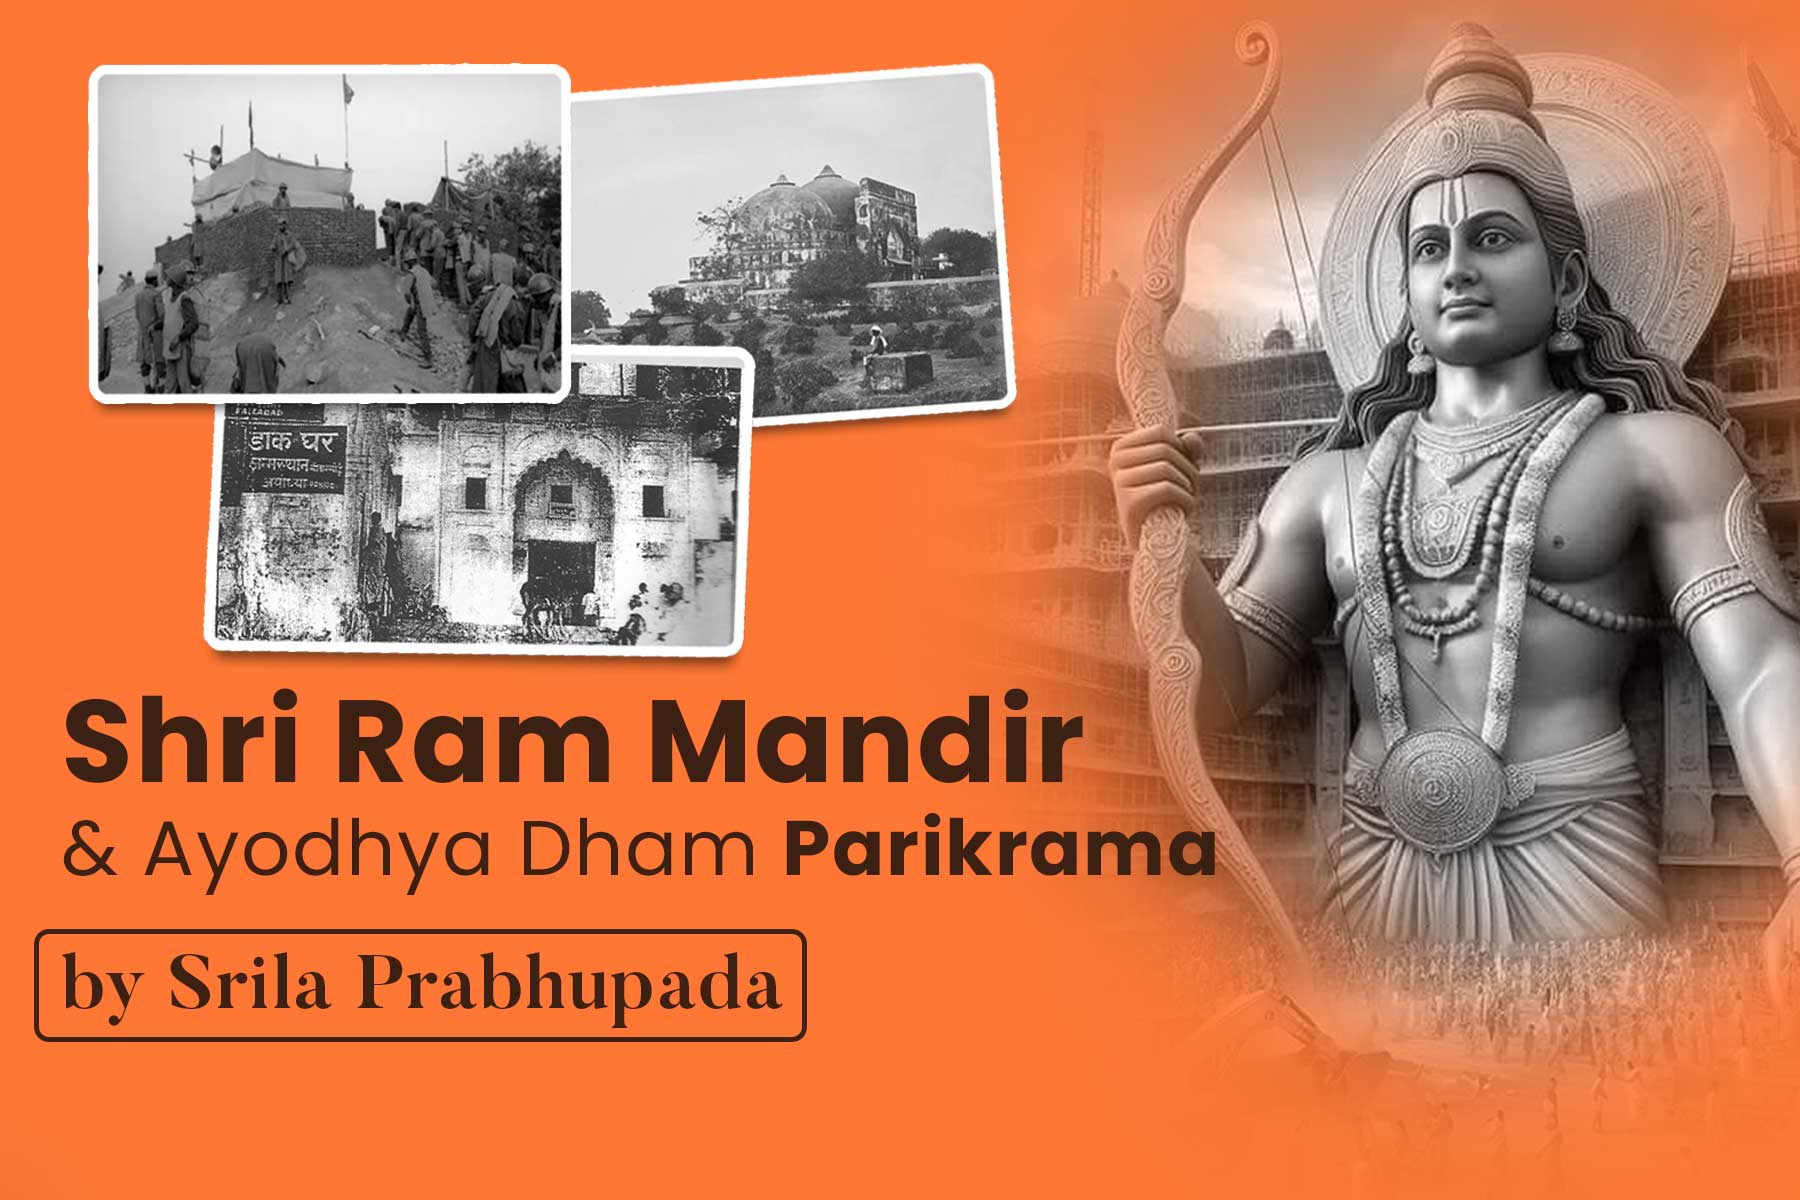 Shri Ram Mandir & Ayodhya Dham parikrama by Srila Prabhupada